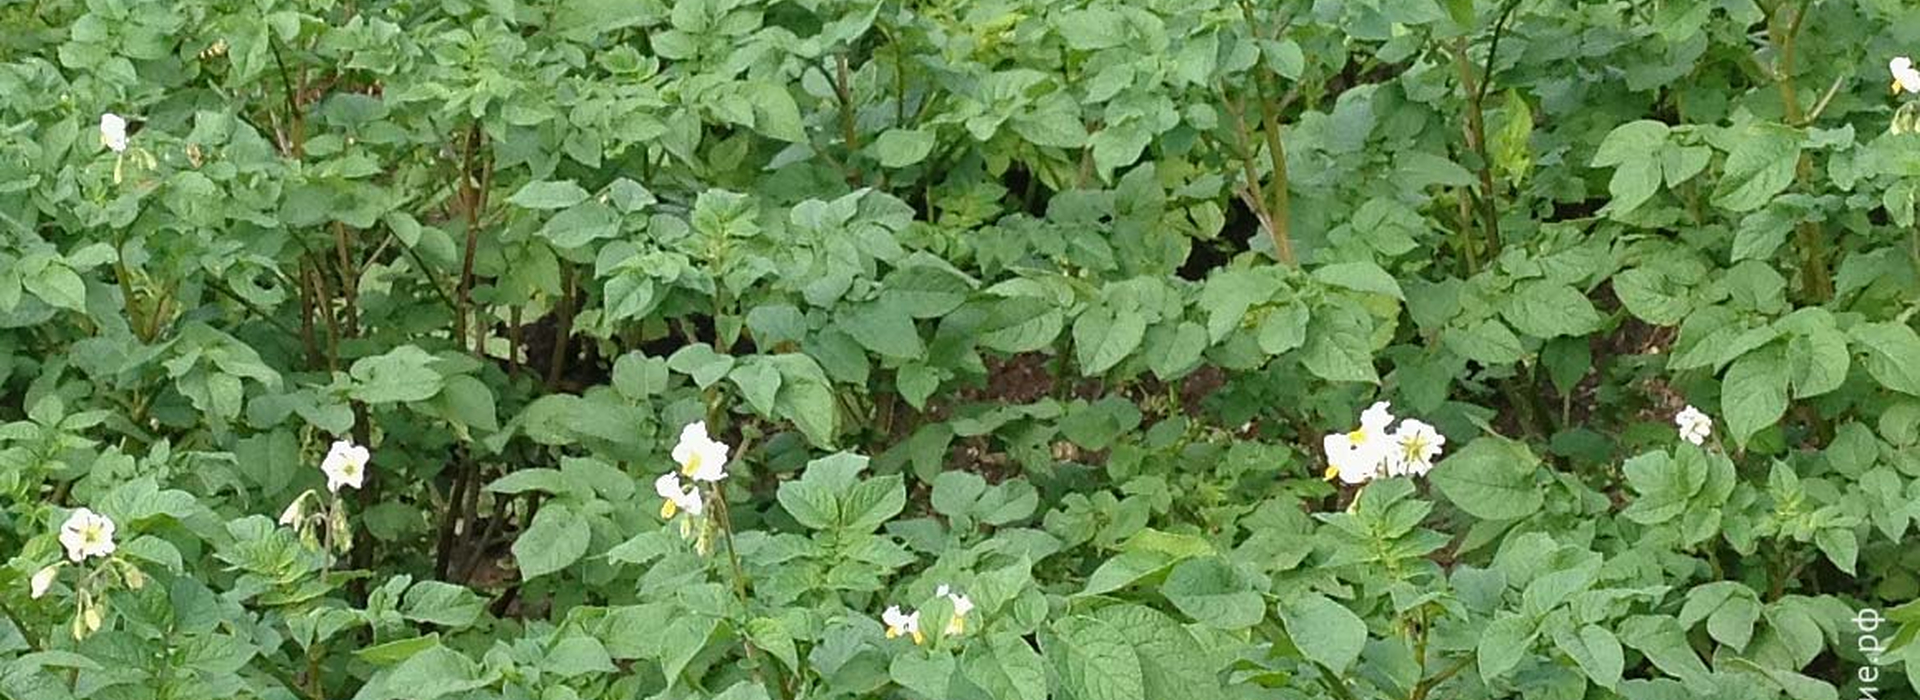 Преимущества выращивания картофеля из семян